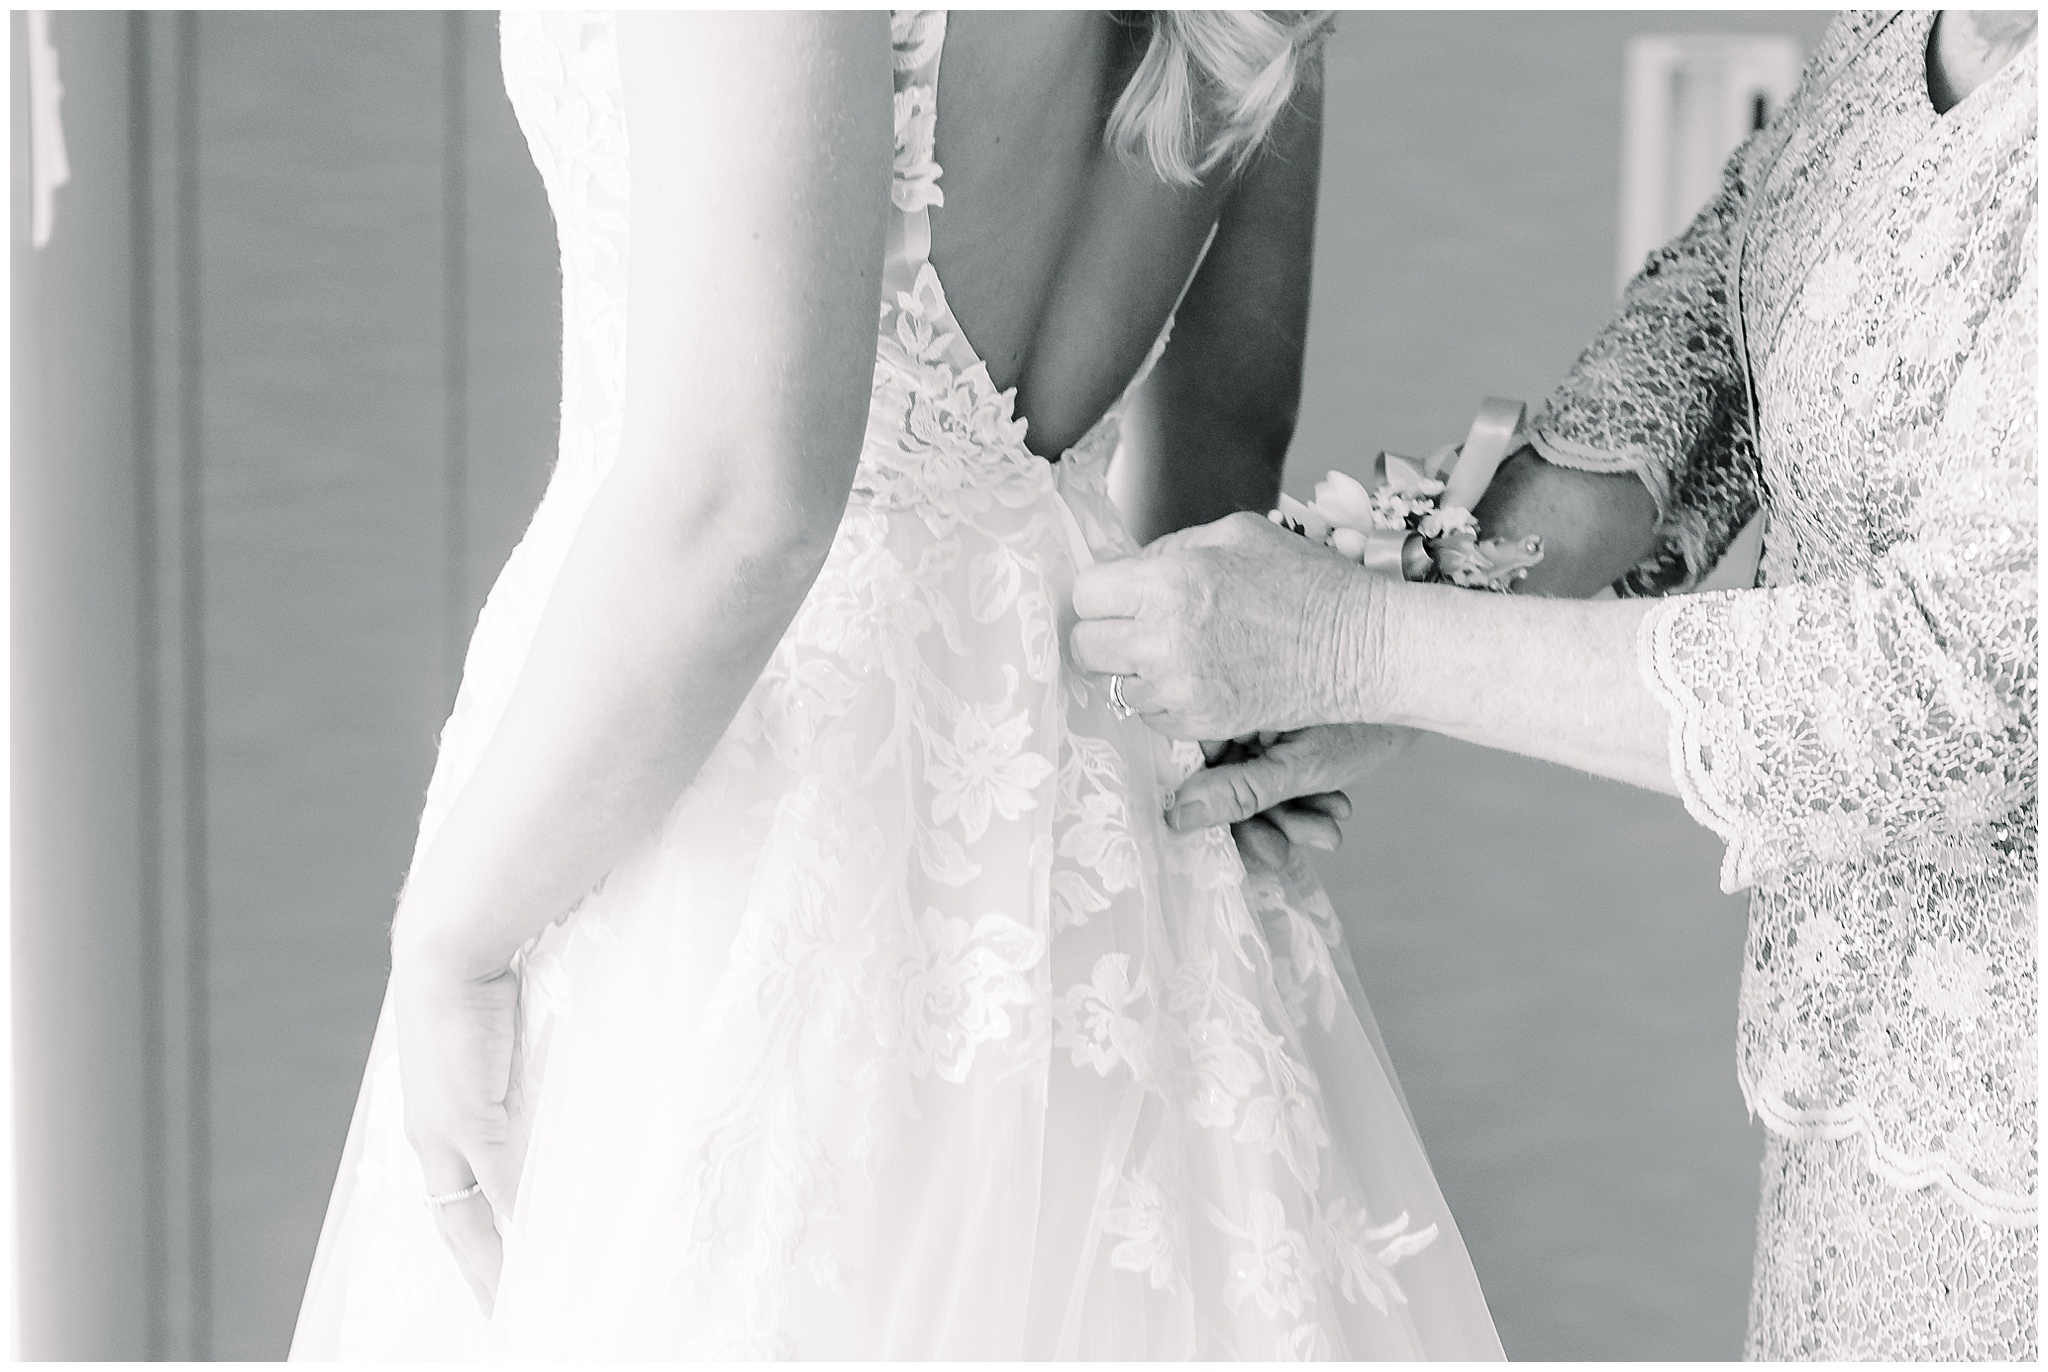 Hands zipping wedding dress